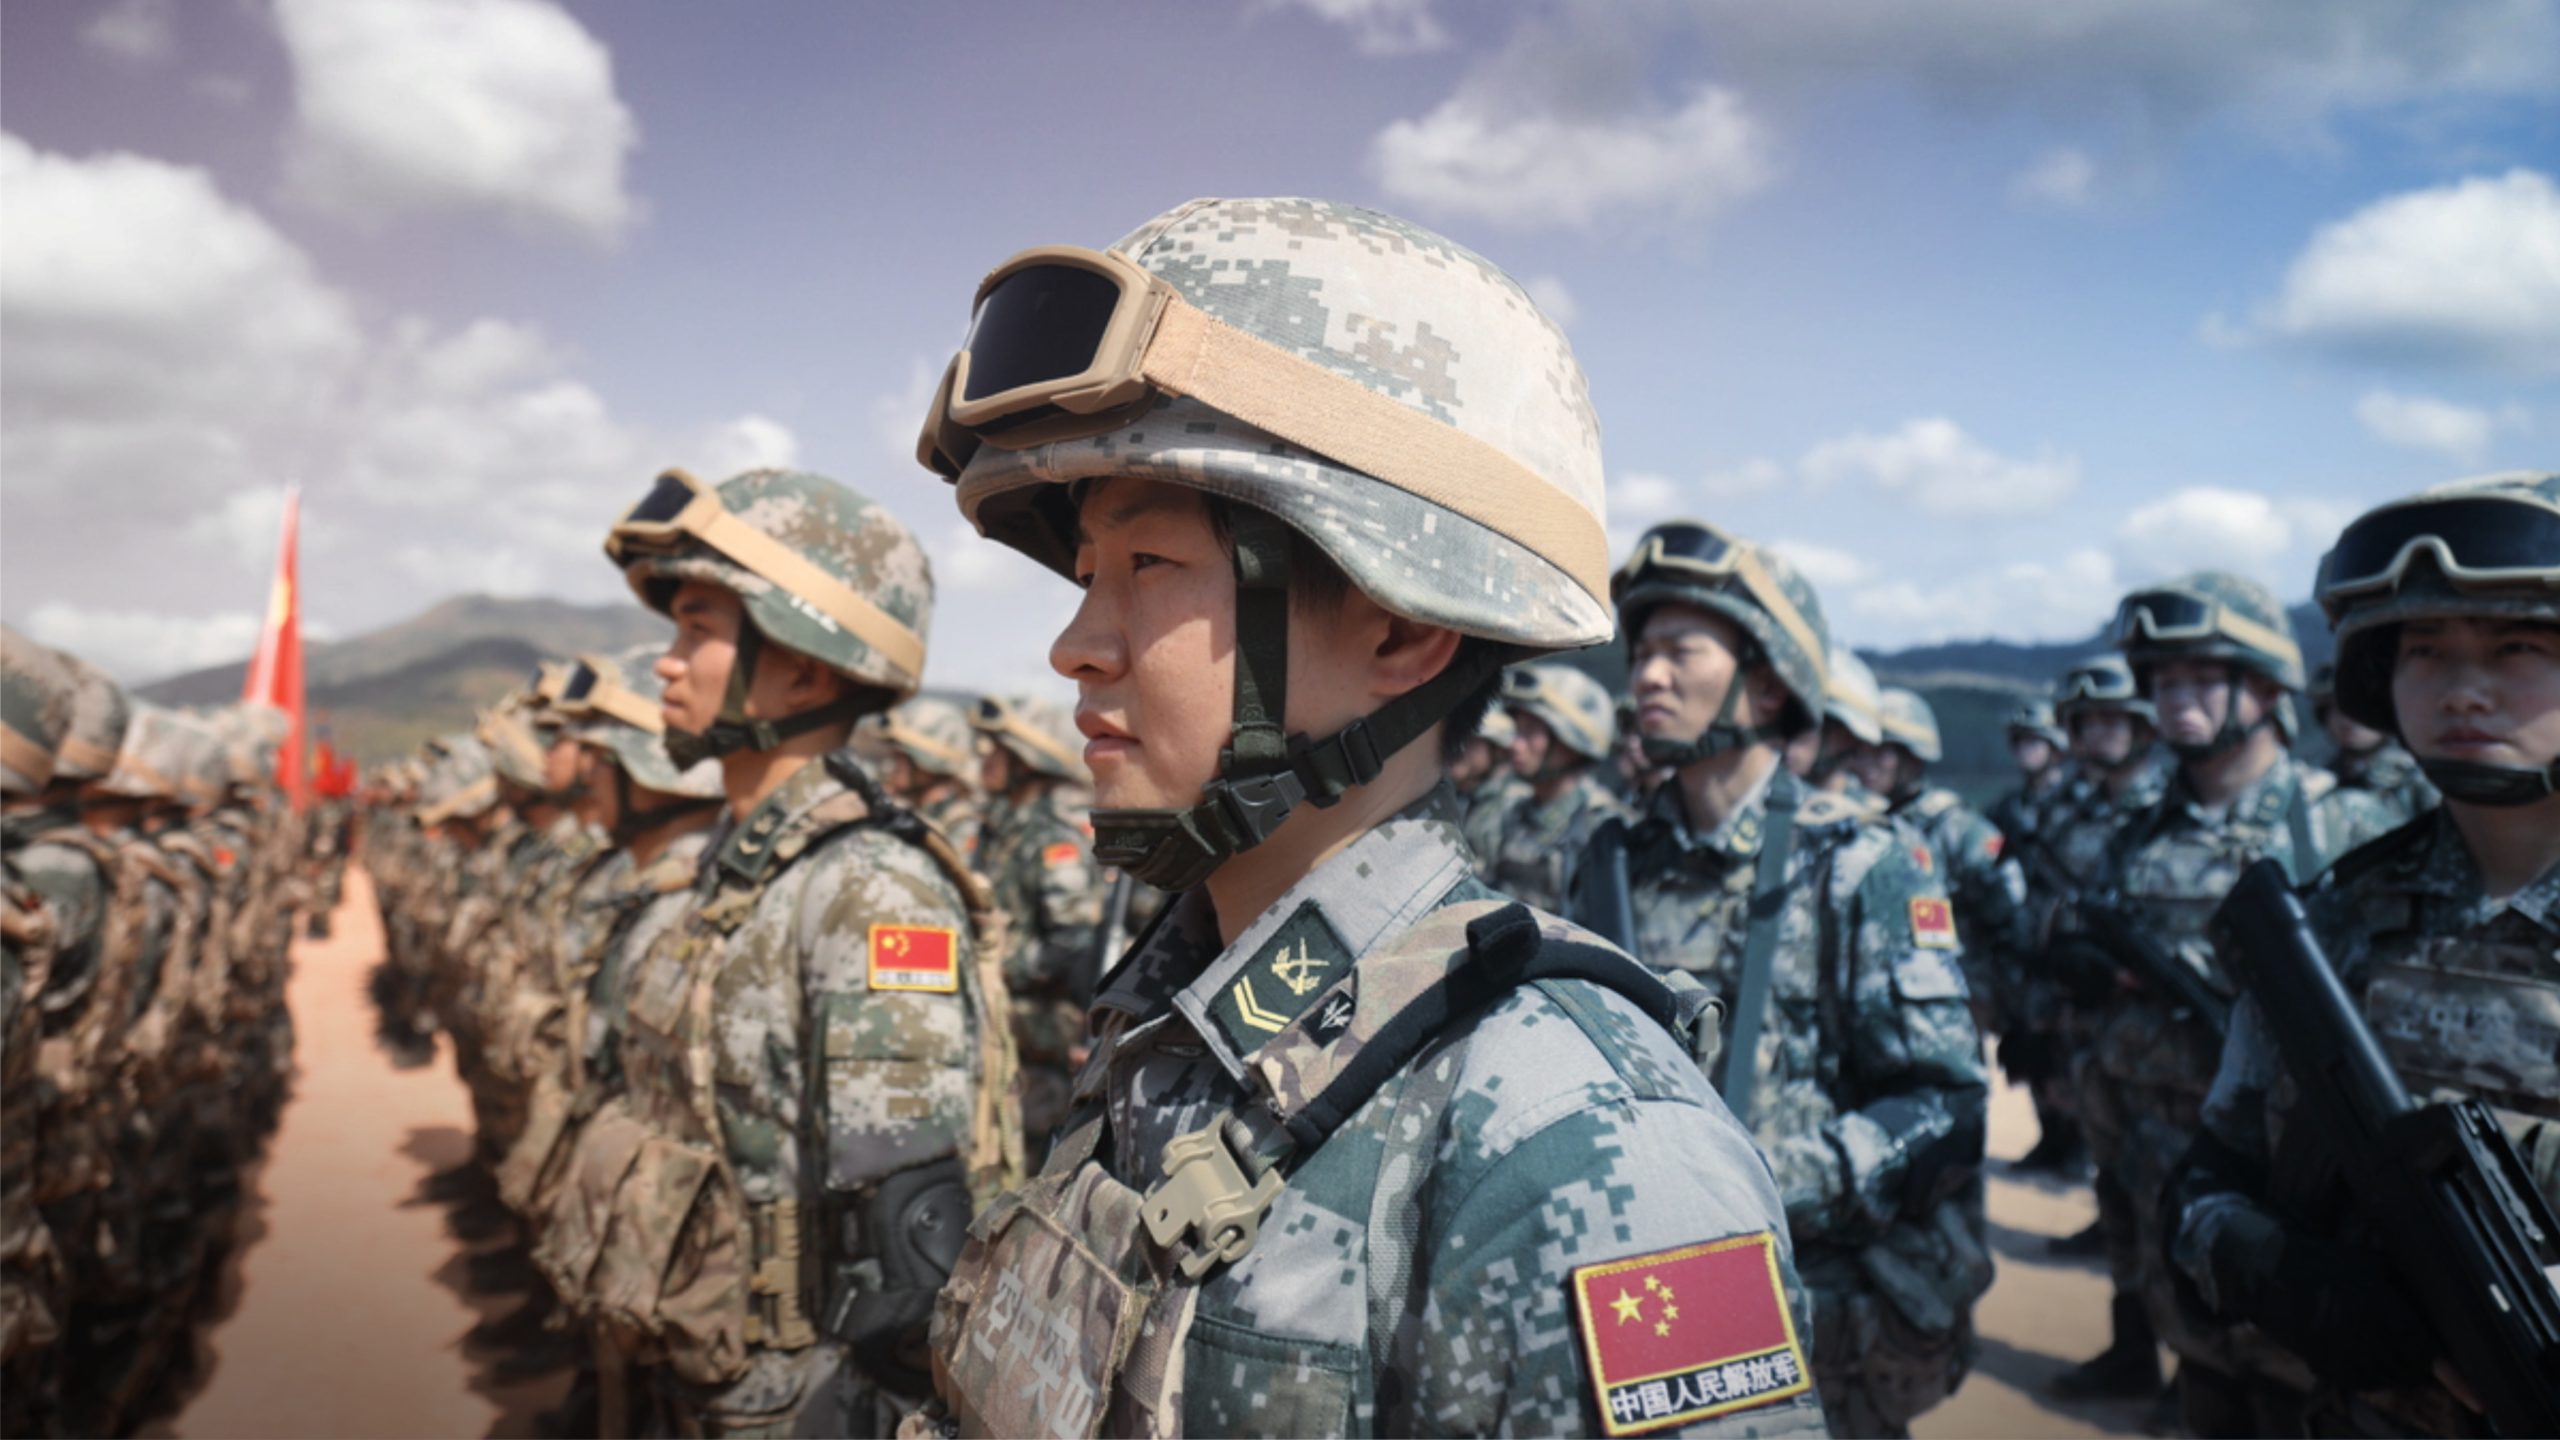 Китай готов к прямому военному вмешательству. Учения НОАК 2020. Китайские солдаты НОАК. Народно-освободительная армия Китая (НОАК). Сухопутные войска НОАК учения.